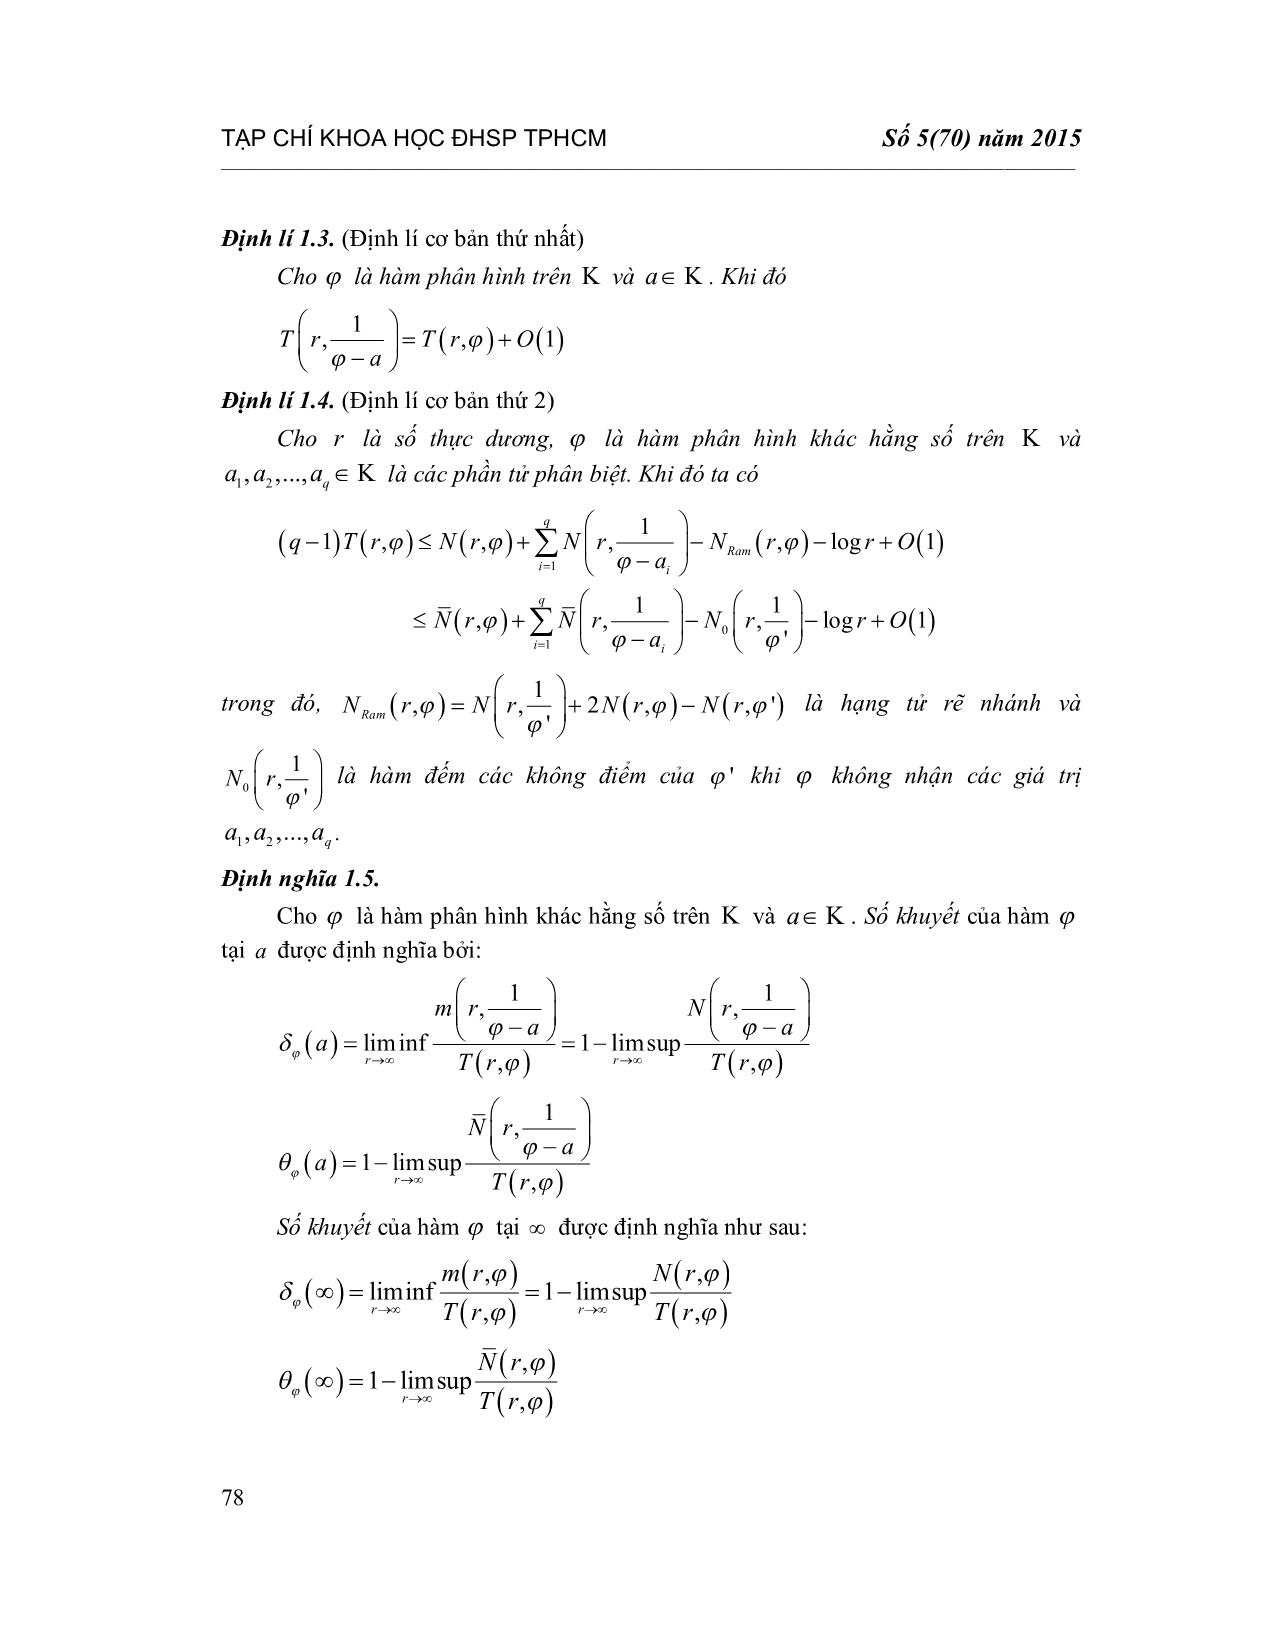 Số khuyết của hàm phân hình phi Acsimet trang 3